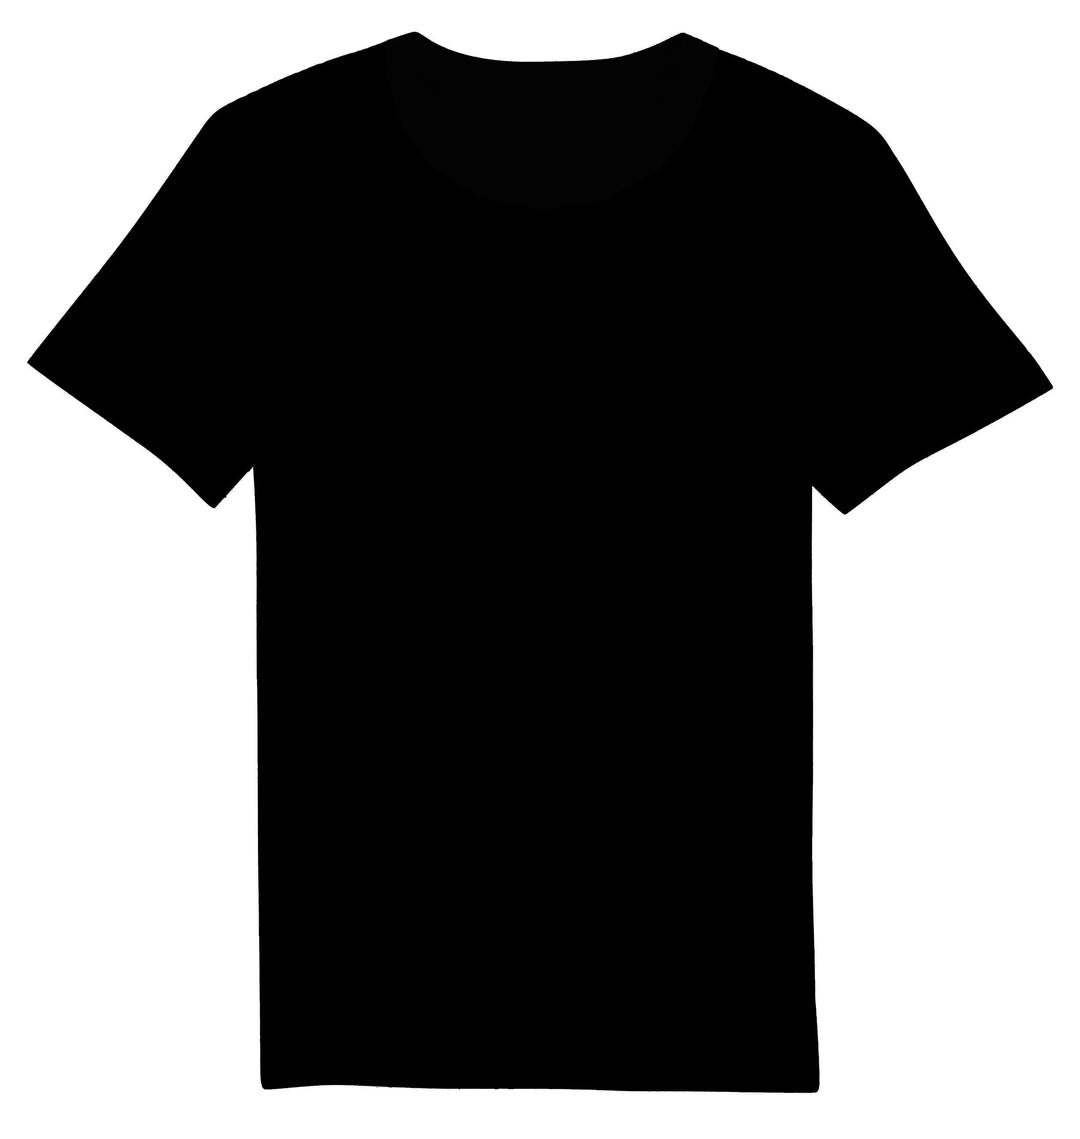 Massgeschneidertes T-Shirt UNISEX Breiter Kragen